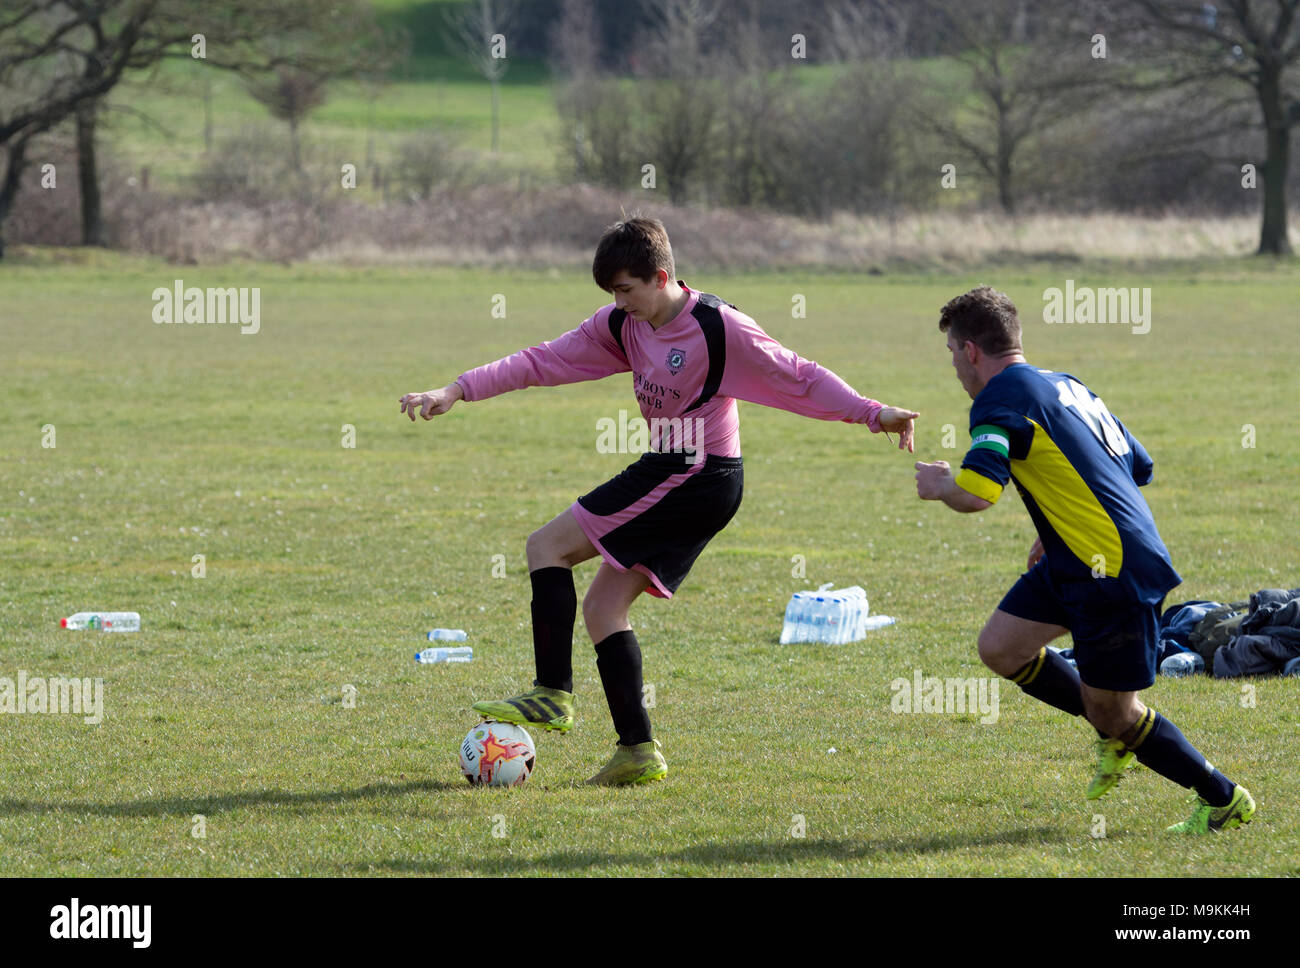 Domingo de fútbol de la Liga, Leamington Spa, Warwickshire, Inglaterra, Reino Unido. Foto de stock